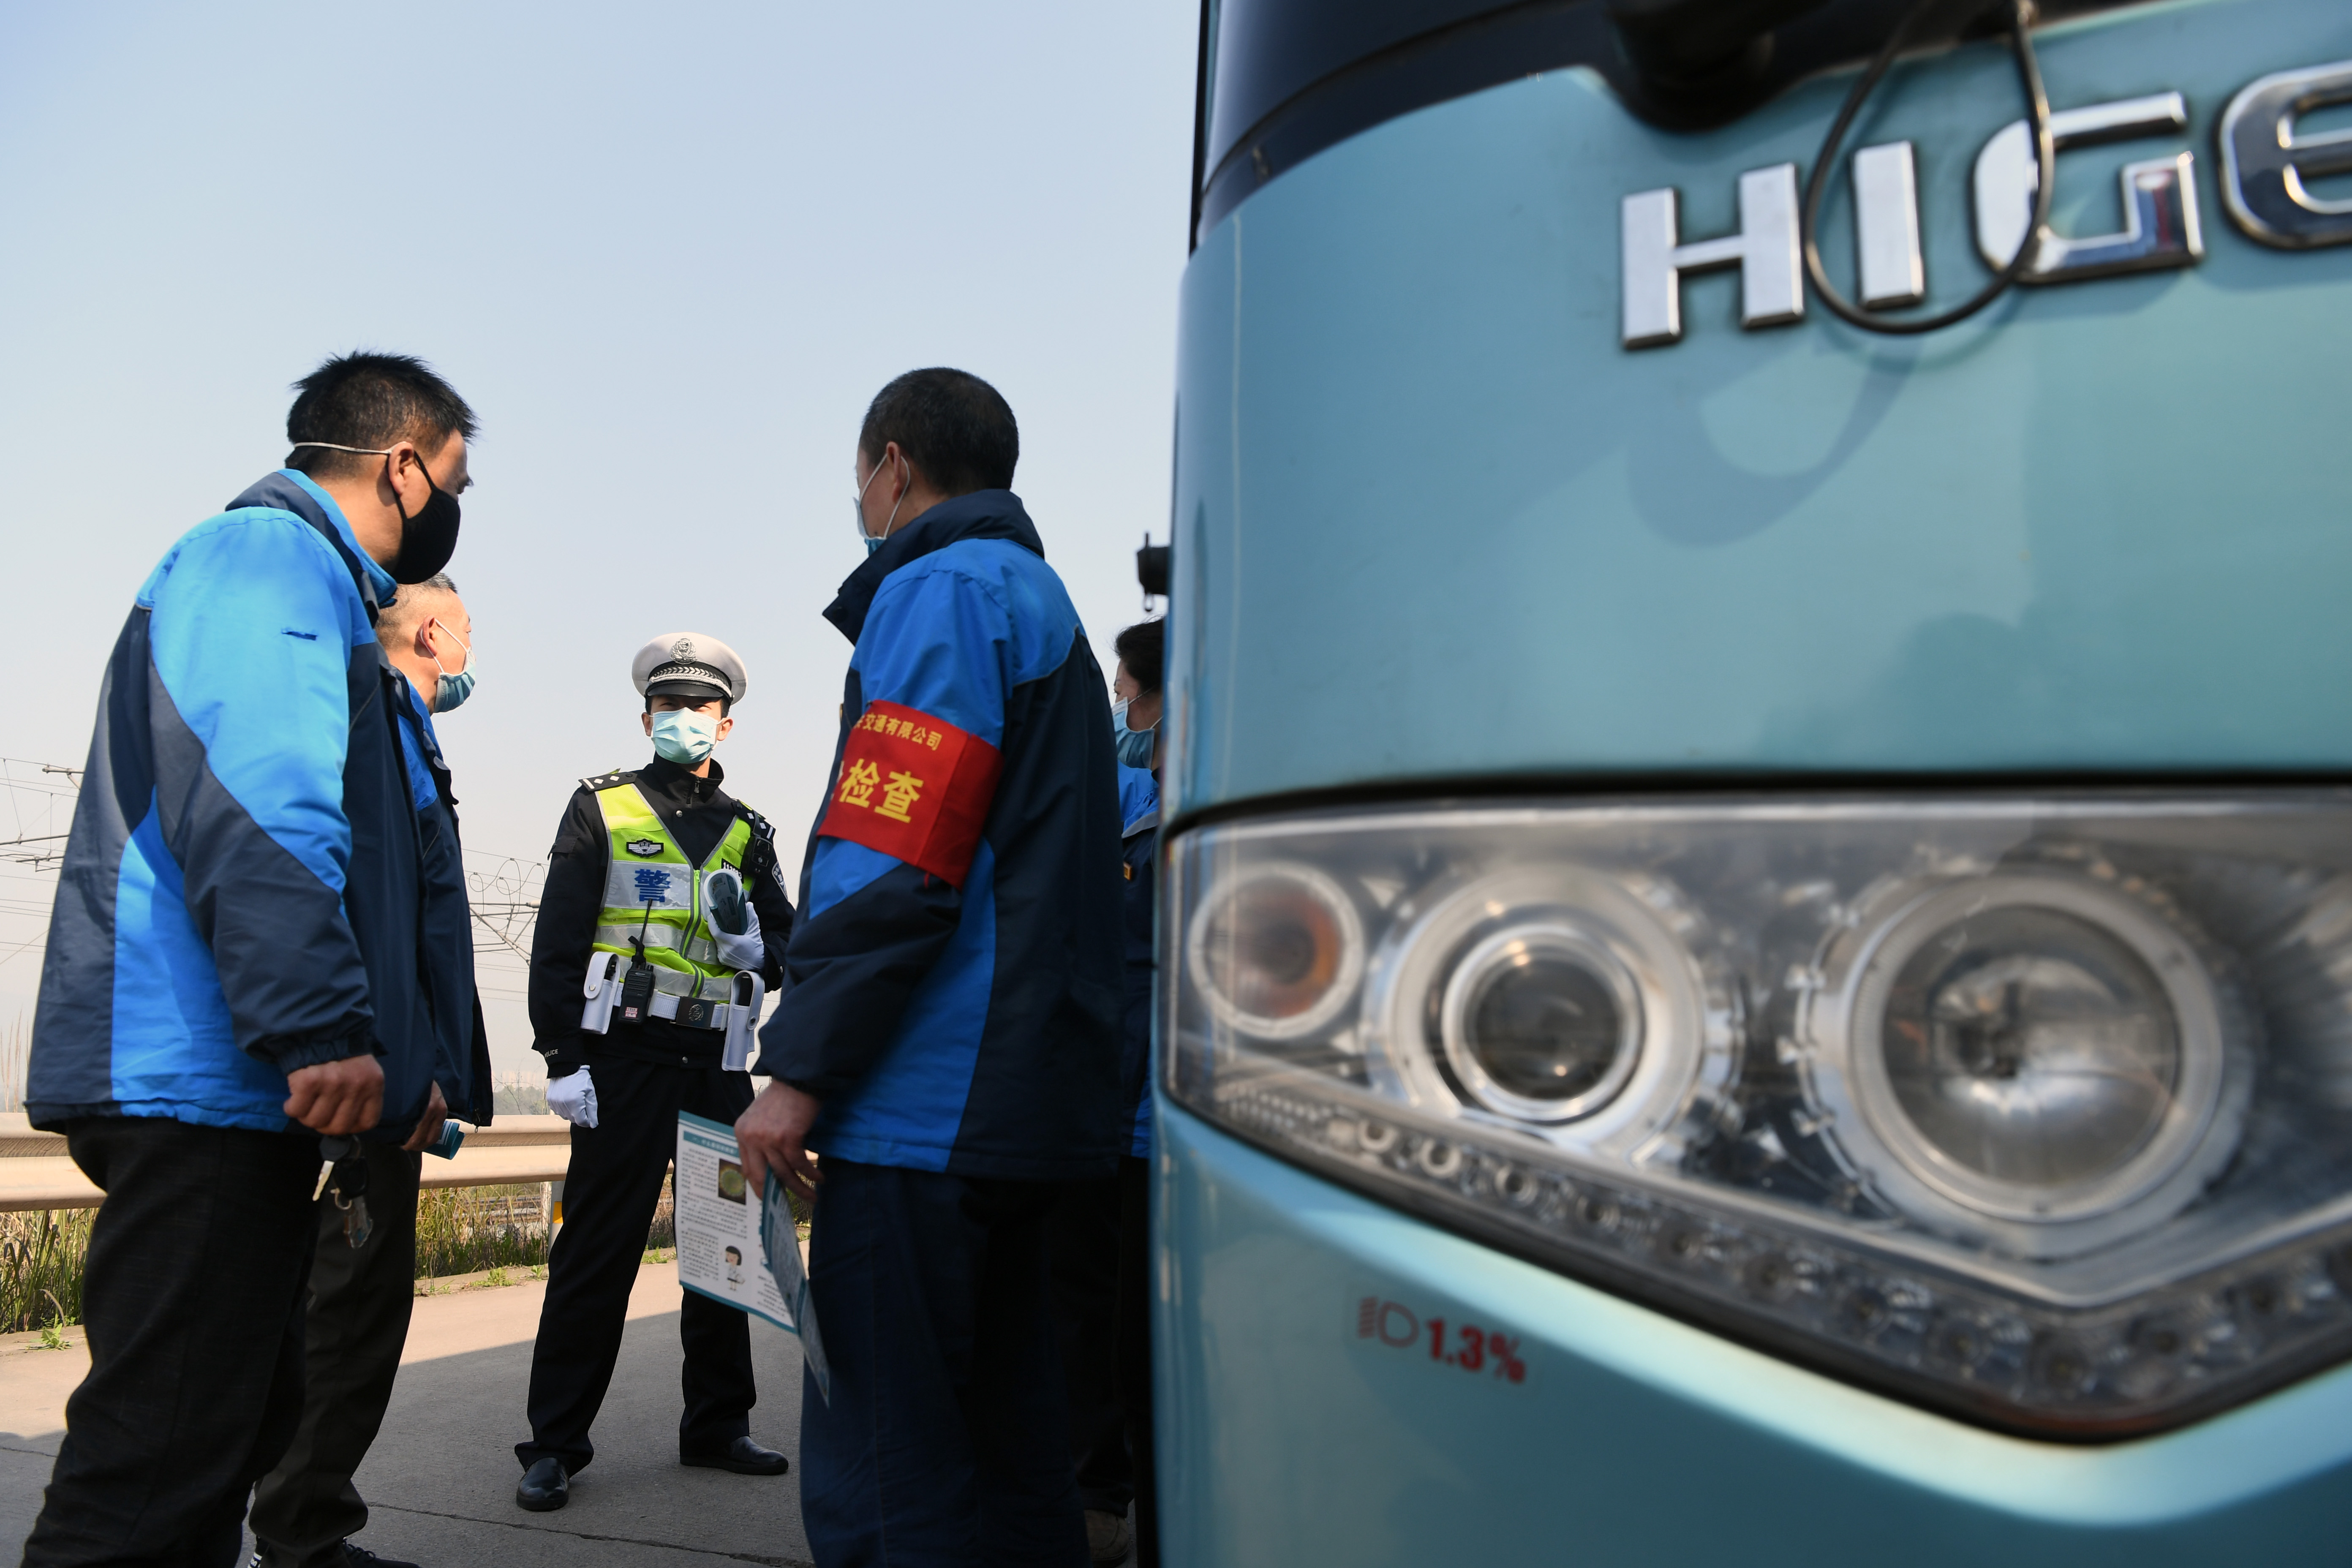 3月19日,铁路公安在重庆西车辆段对企业通勤车驾驶员进行疫情防控